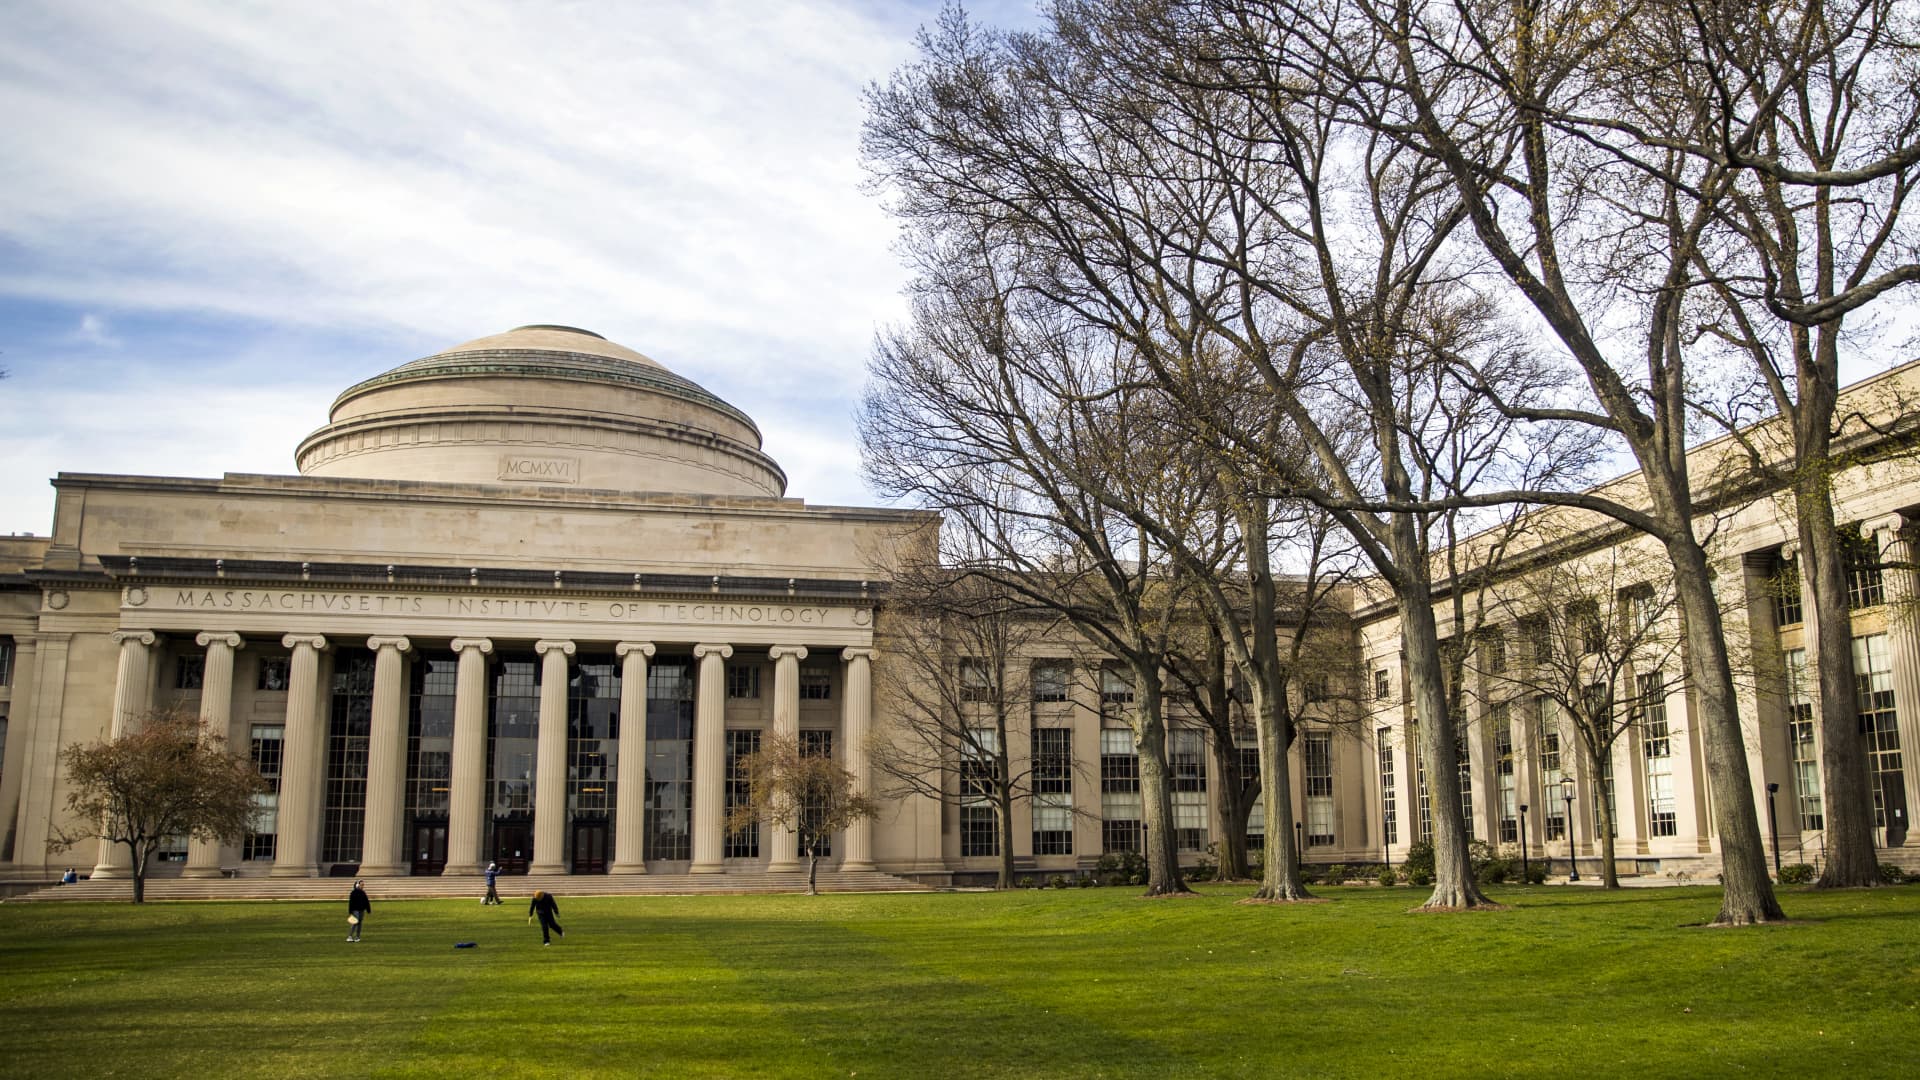 Massachusetts Institute of Technology (MIT) campus in Cambridge, Massachusetts